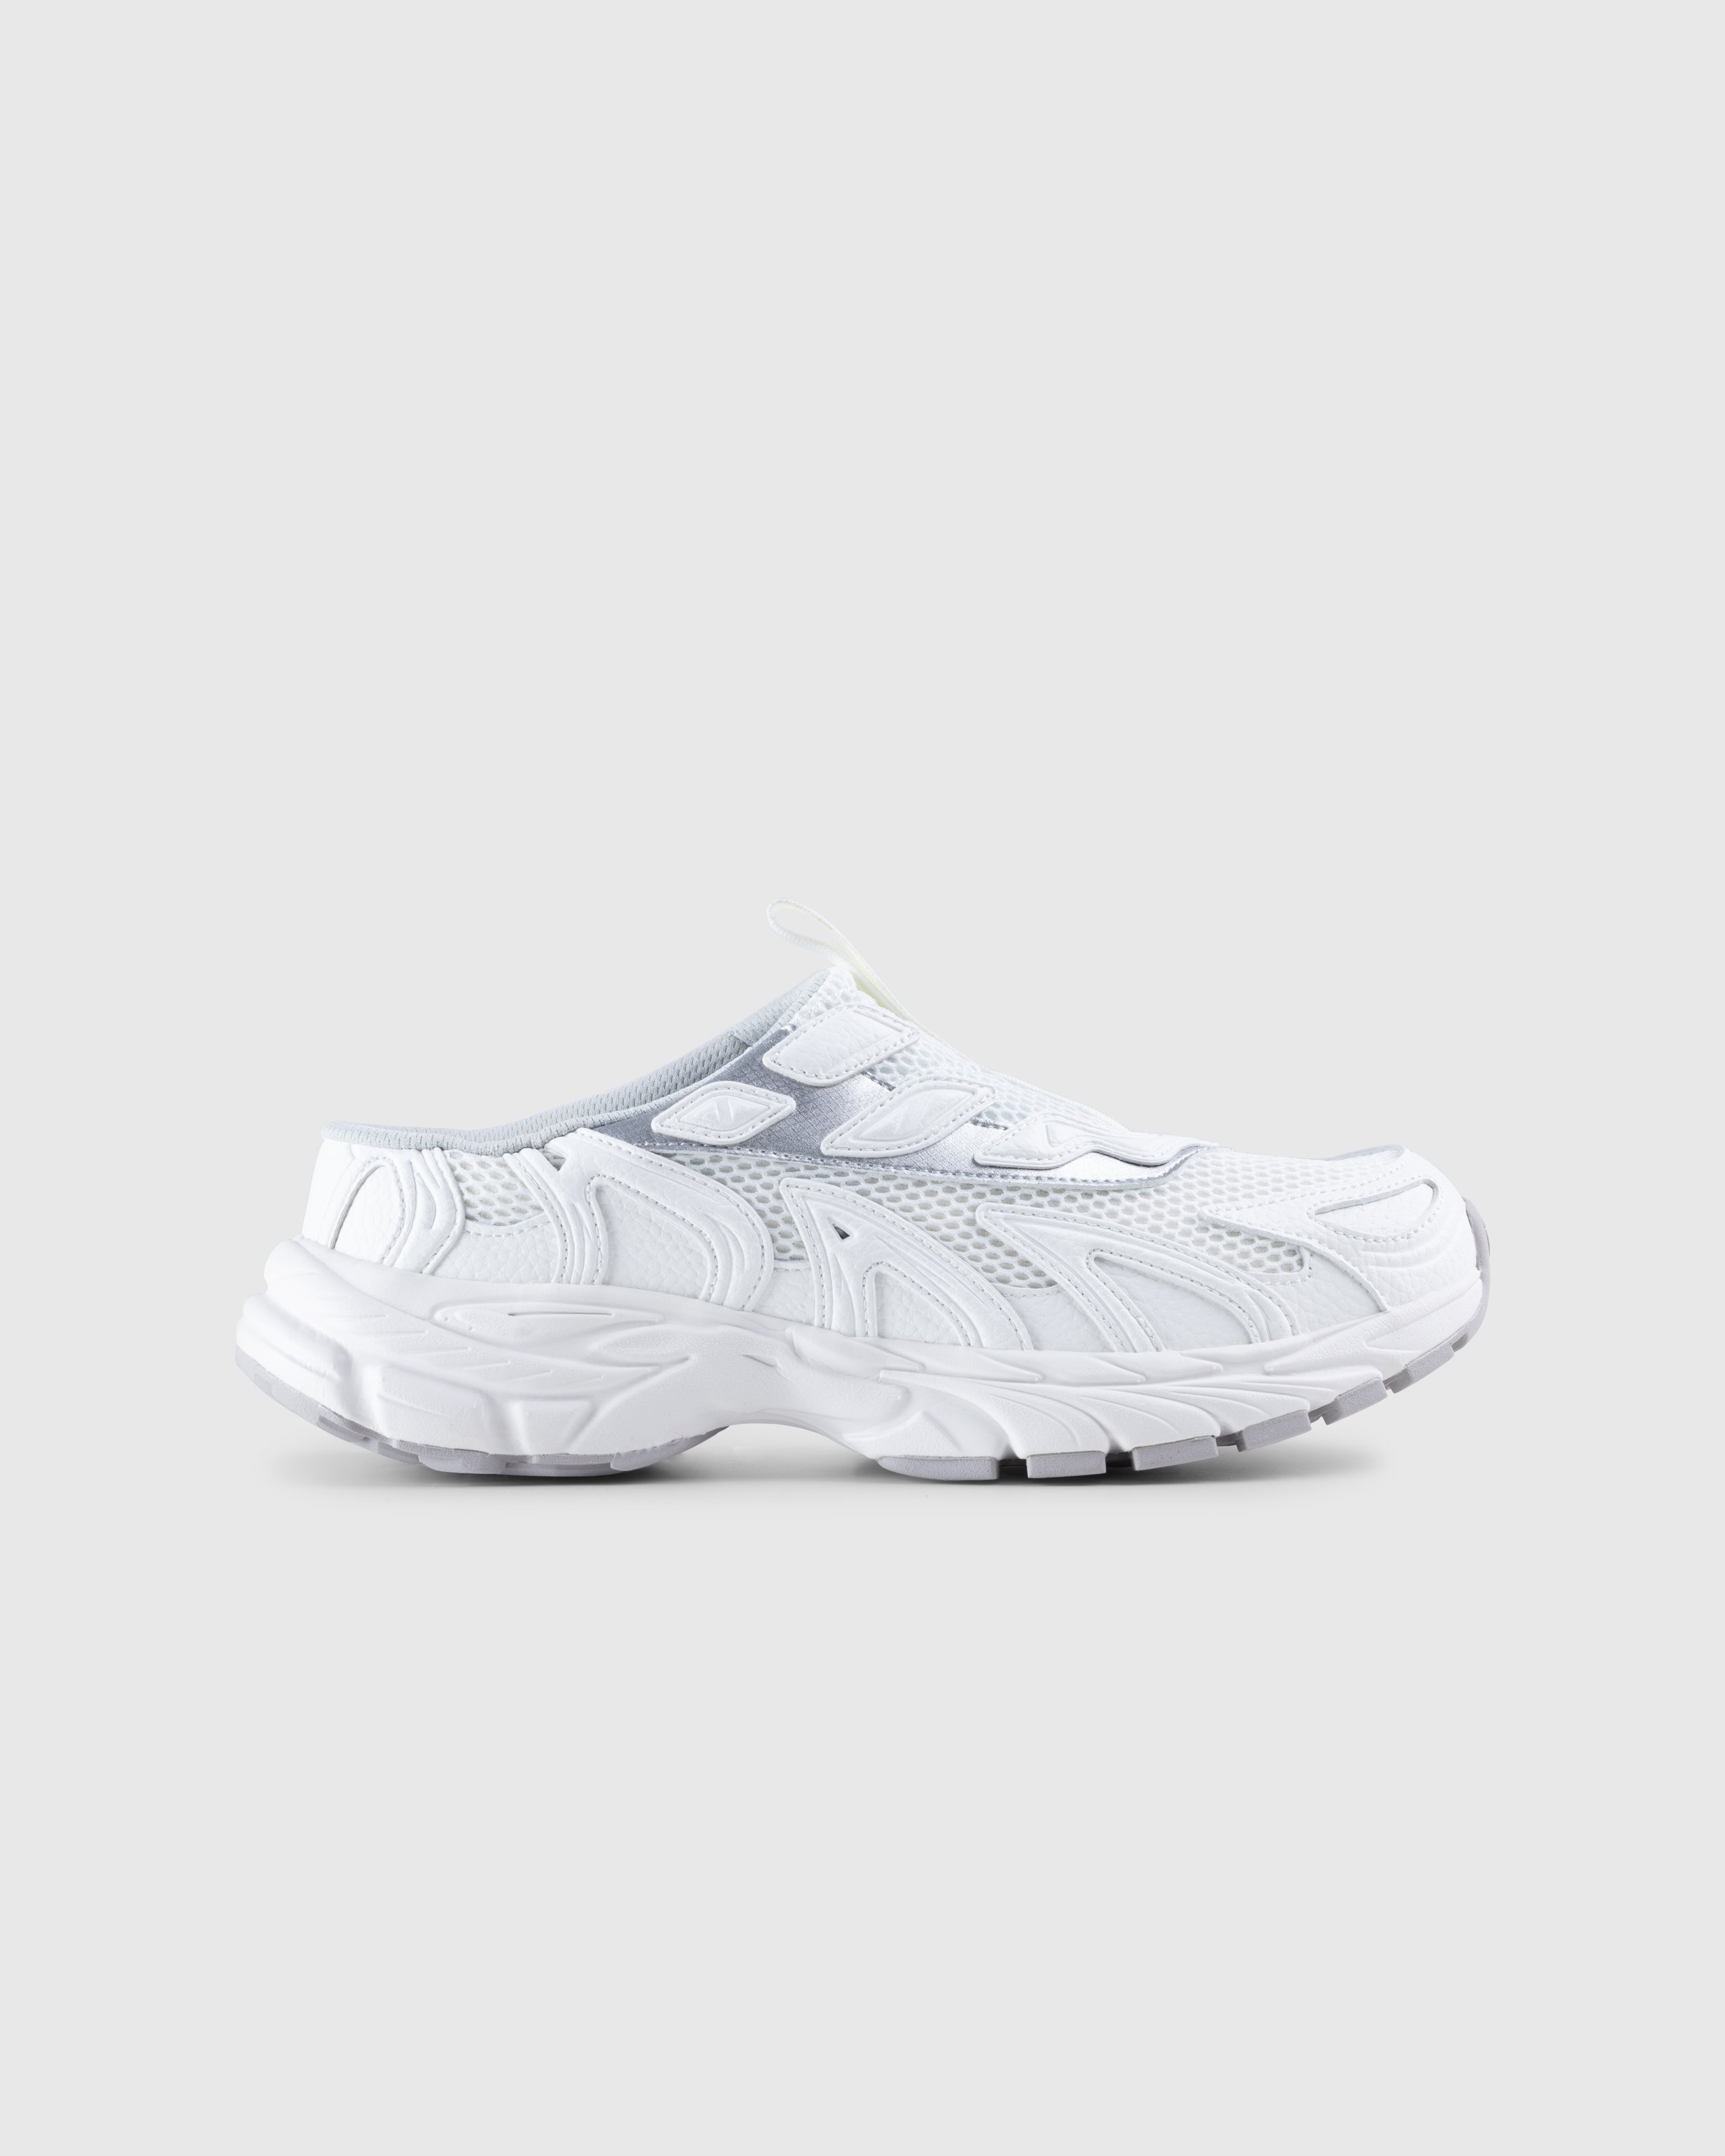 Trussardi - Retro Mule Sneaker - Footwear - White - Image 1